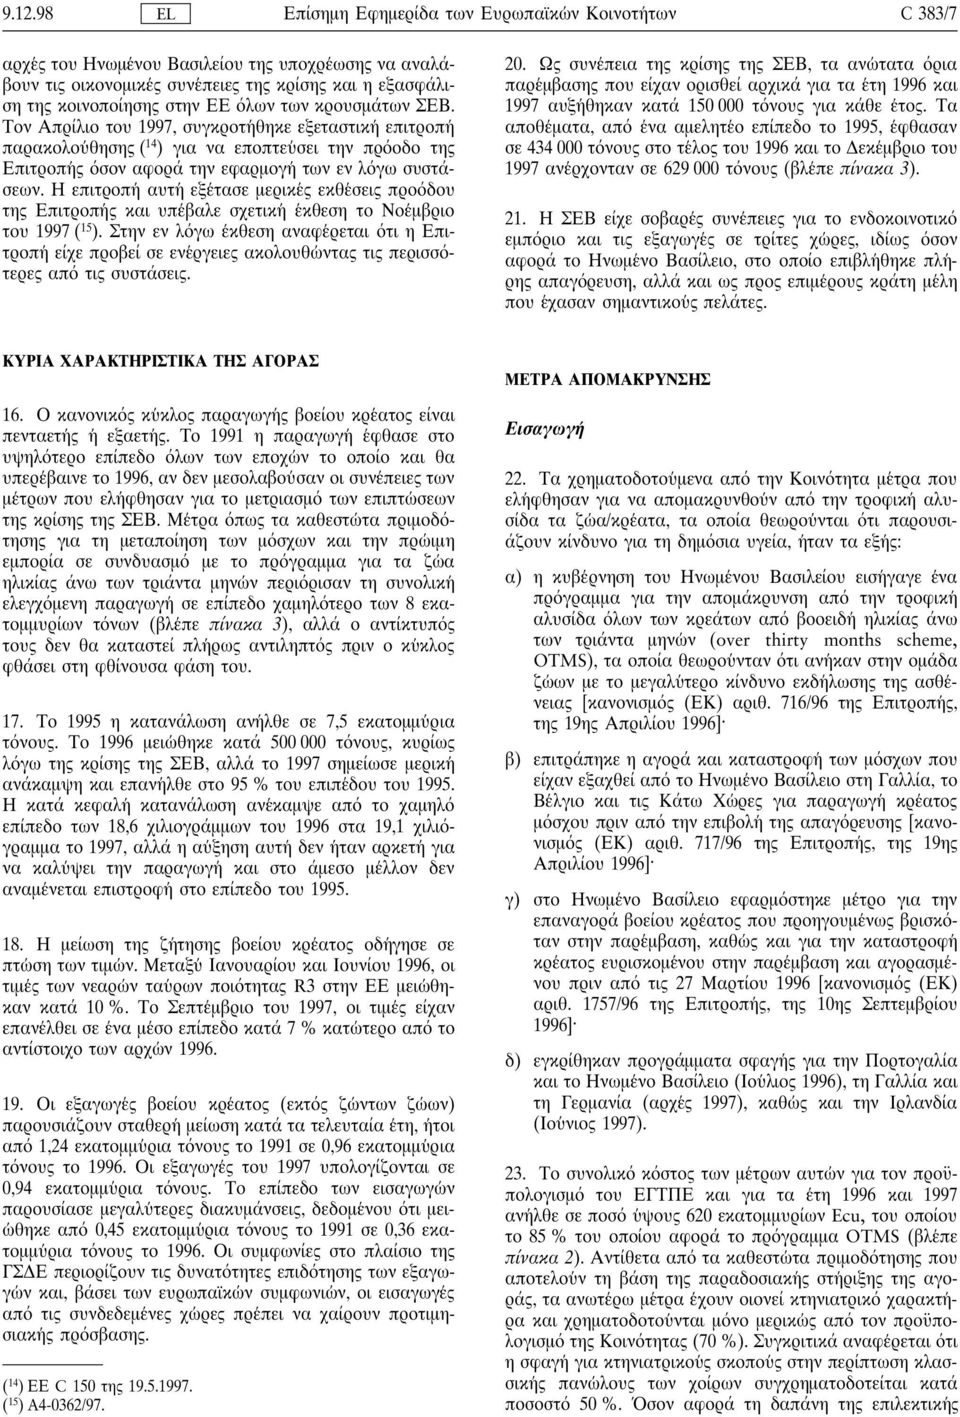 Τον Απρίλιο του 1997, συγκροτη θηκε εξεταστικη επιτροπη παρακολου θησης ( 14 ) για να εποπτευ σει την πρ οδο της Επιτροπη ς σον αφορά την εφαρµογη των εν λ γω συστάσεων.